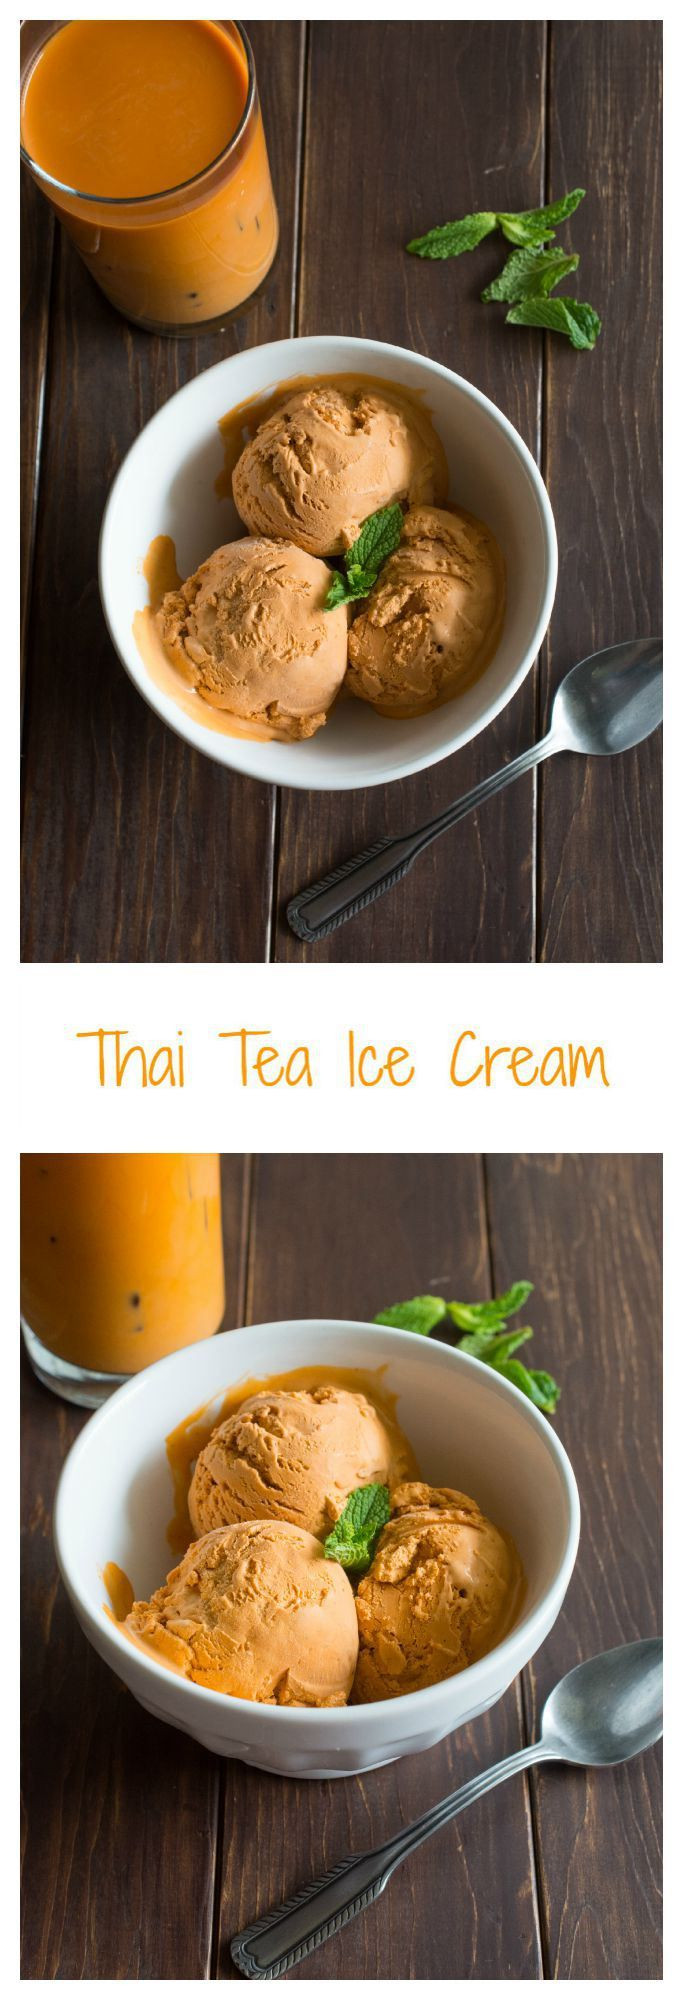 Thai Ice Cream Recipes
 Thai Tea Ice Cream Recipe